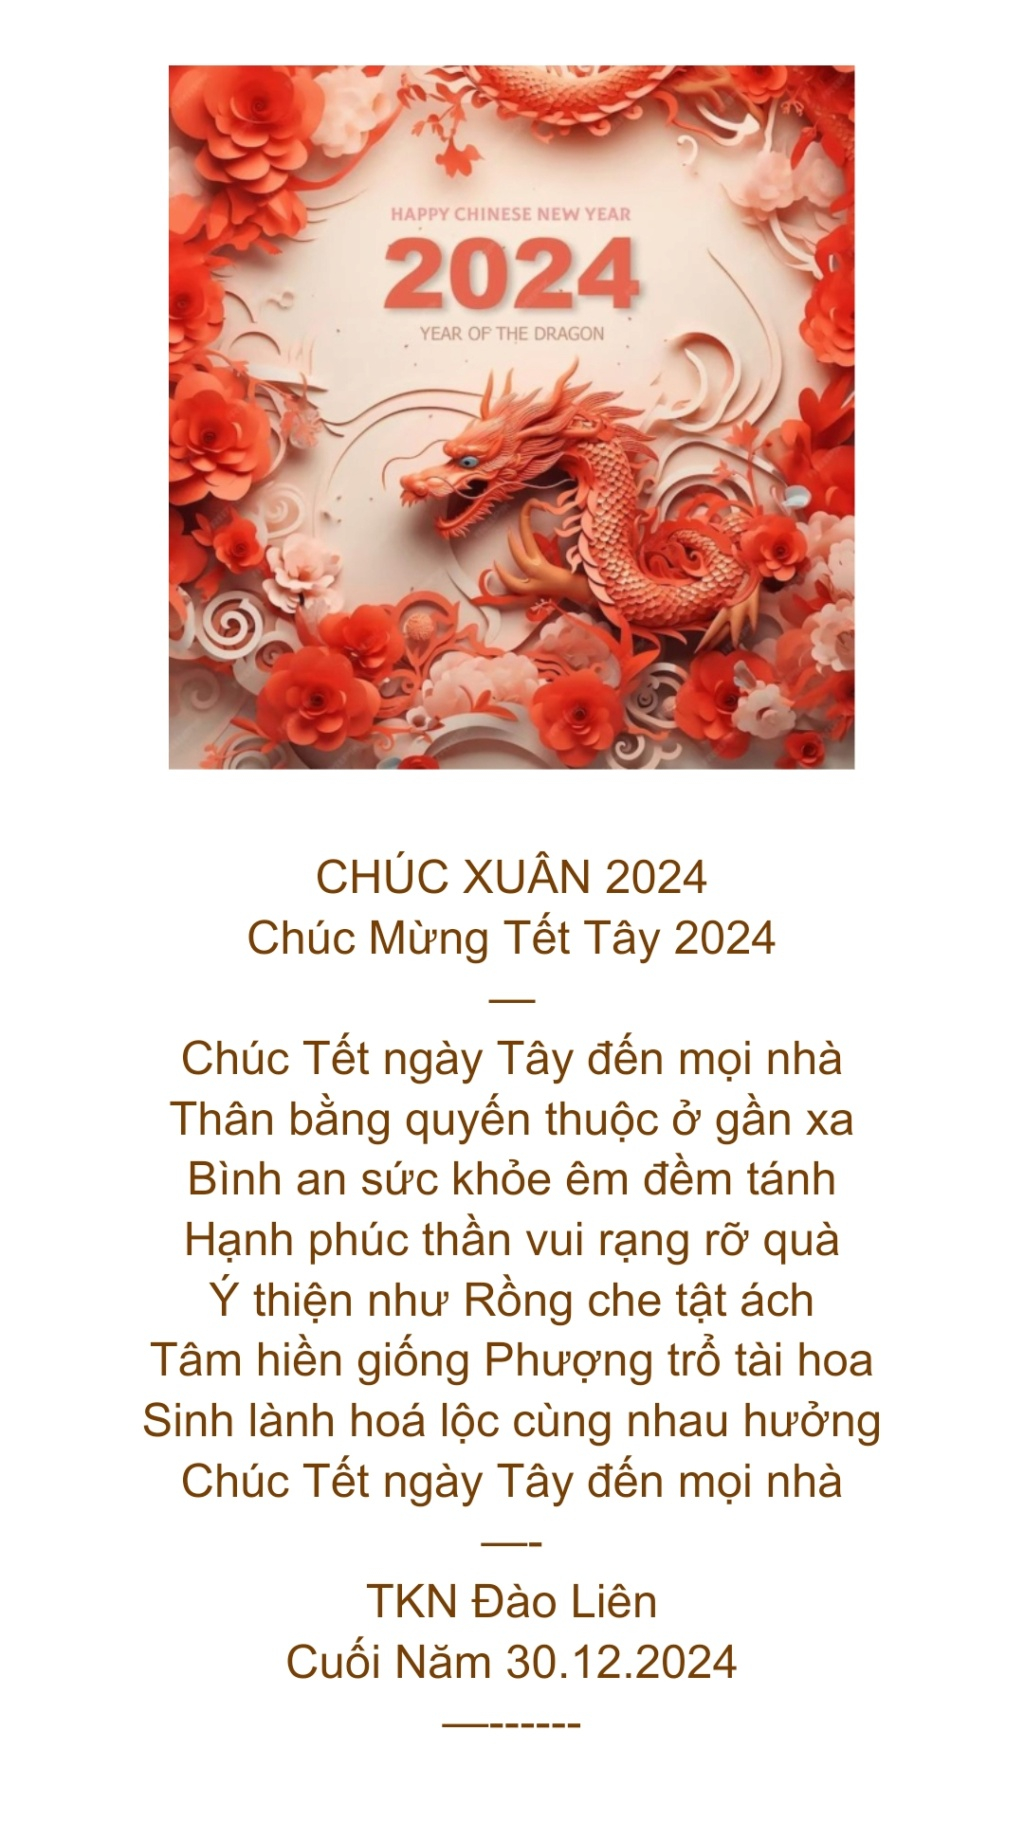 Chúc Mừng Lưu  - Page 12 Scre1021